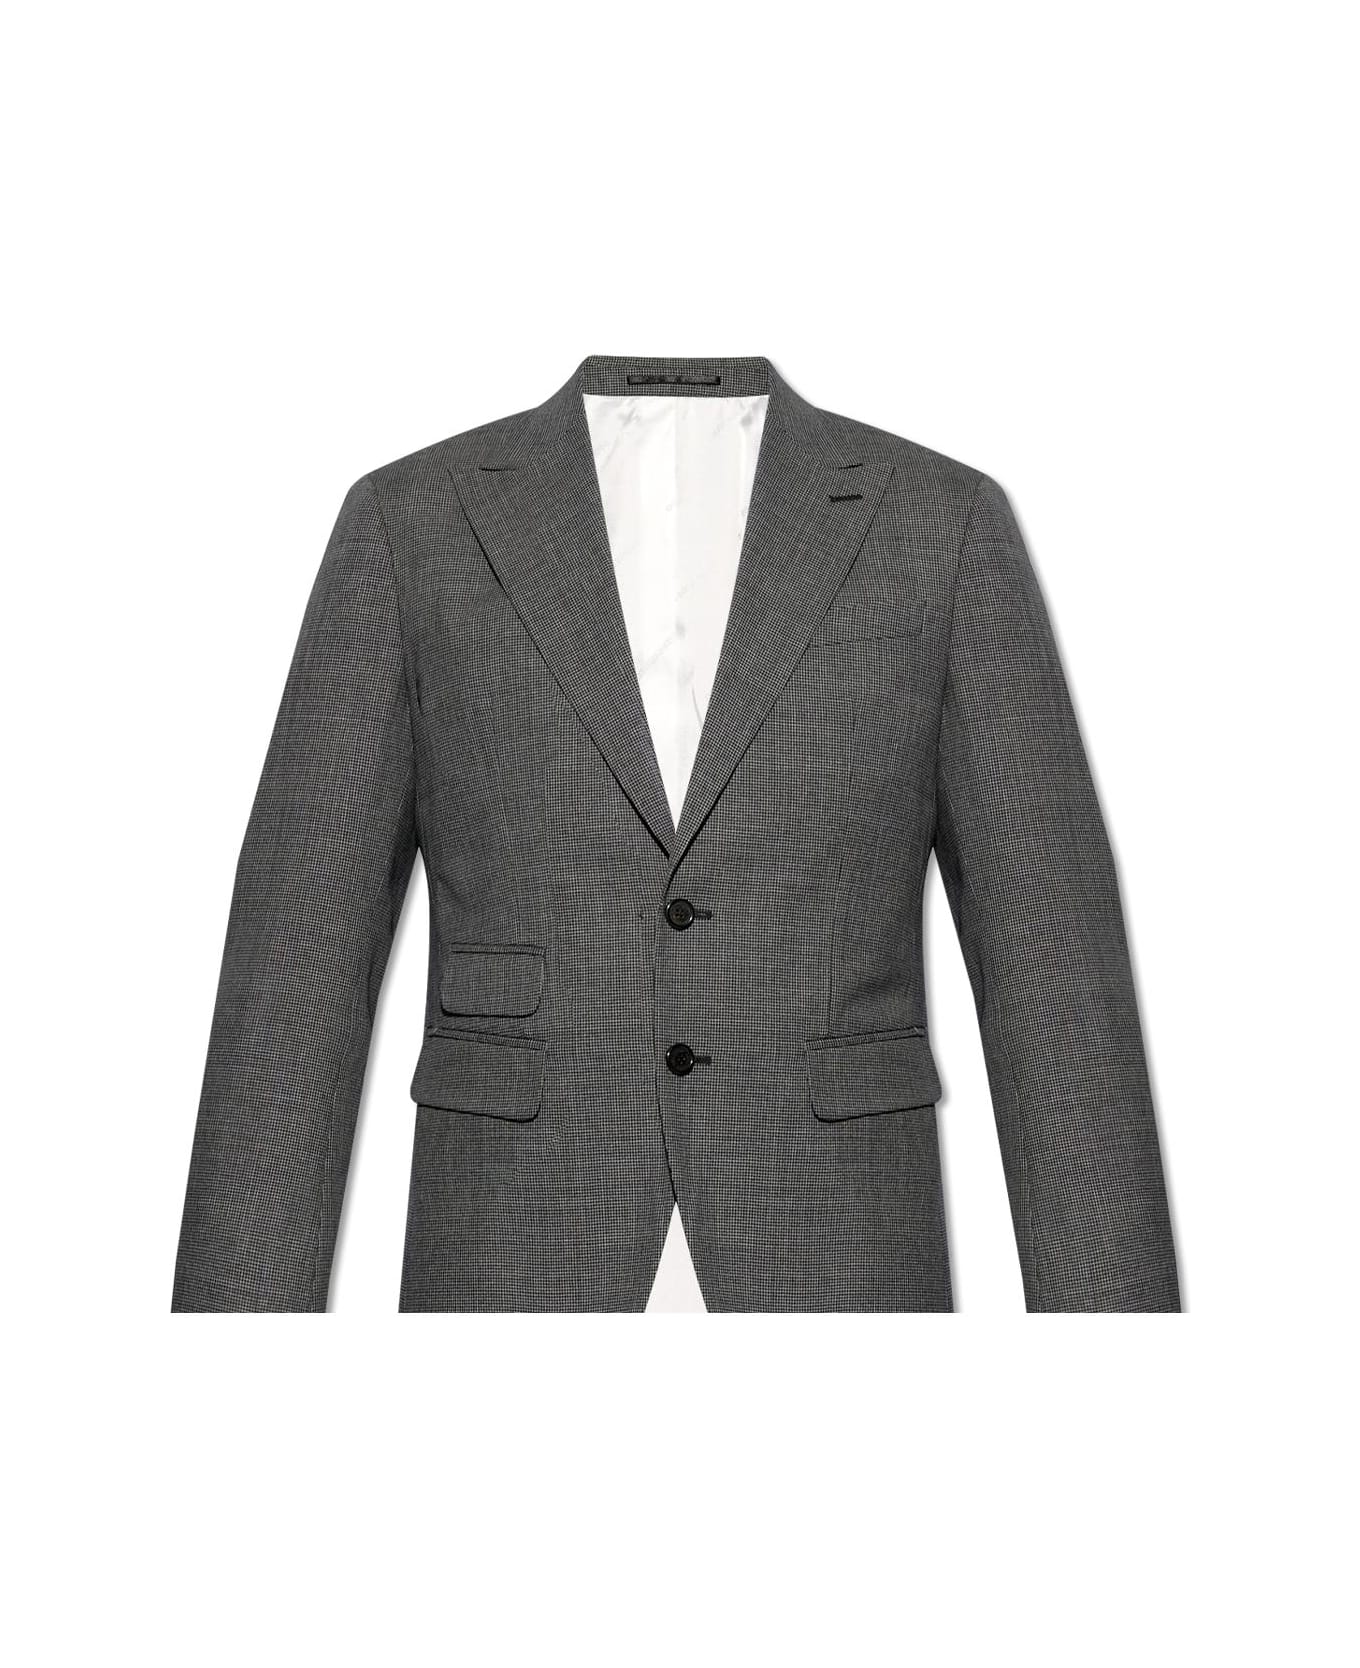 Dsquared2 Suit - Grigio スーツ